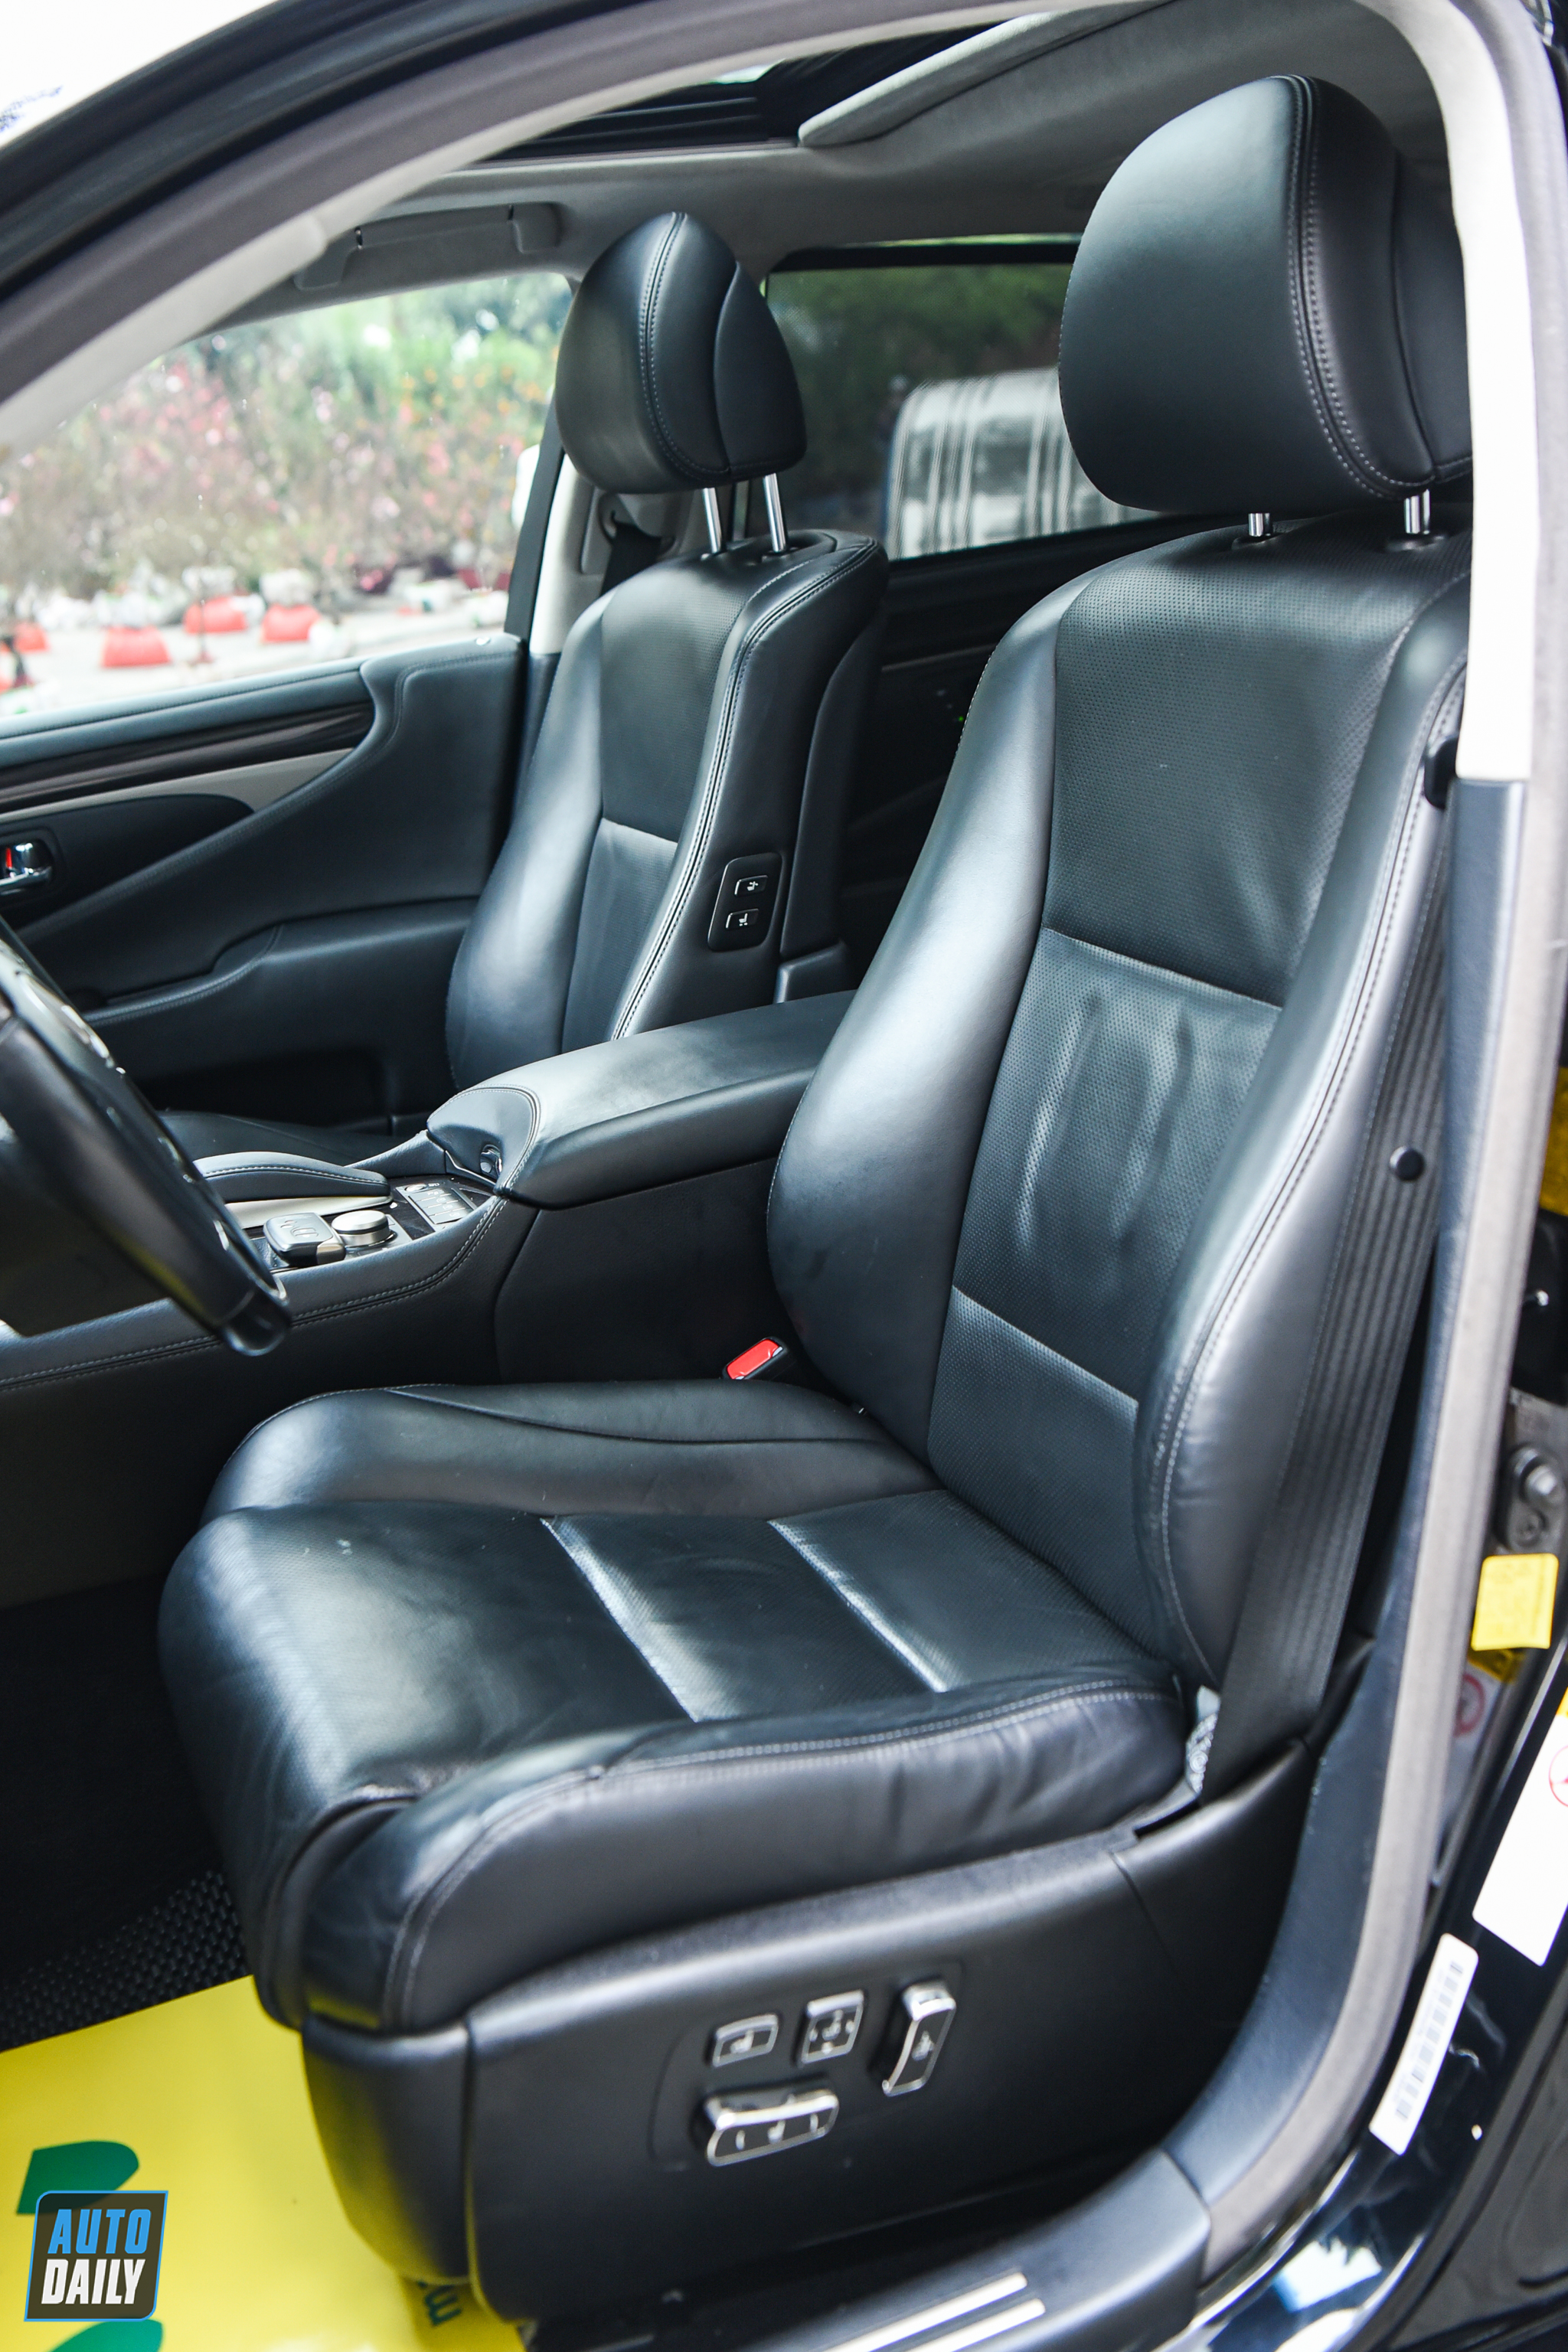 Lexus LS460L 2013 biển đẹp chào bán lại hơn 3 tỷ đồng adt-7784.jpg